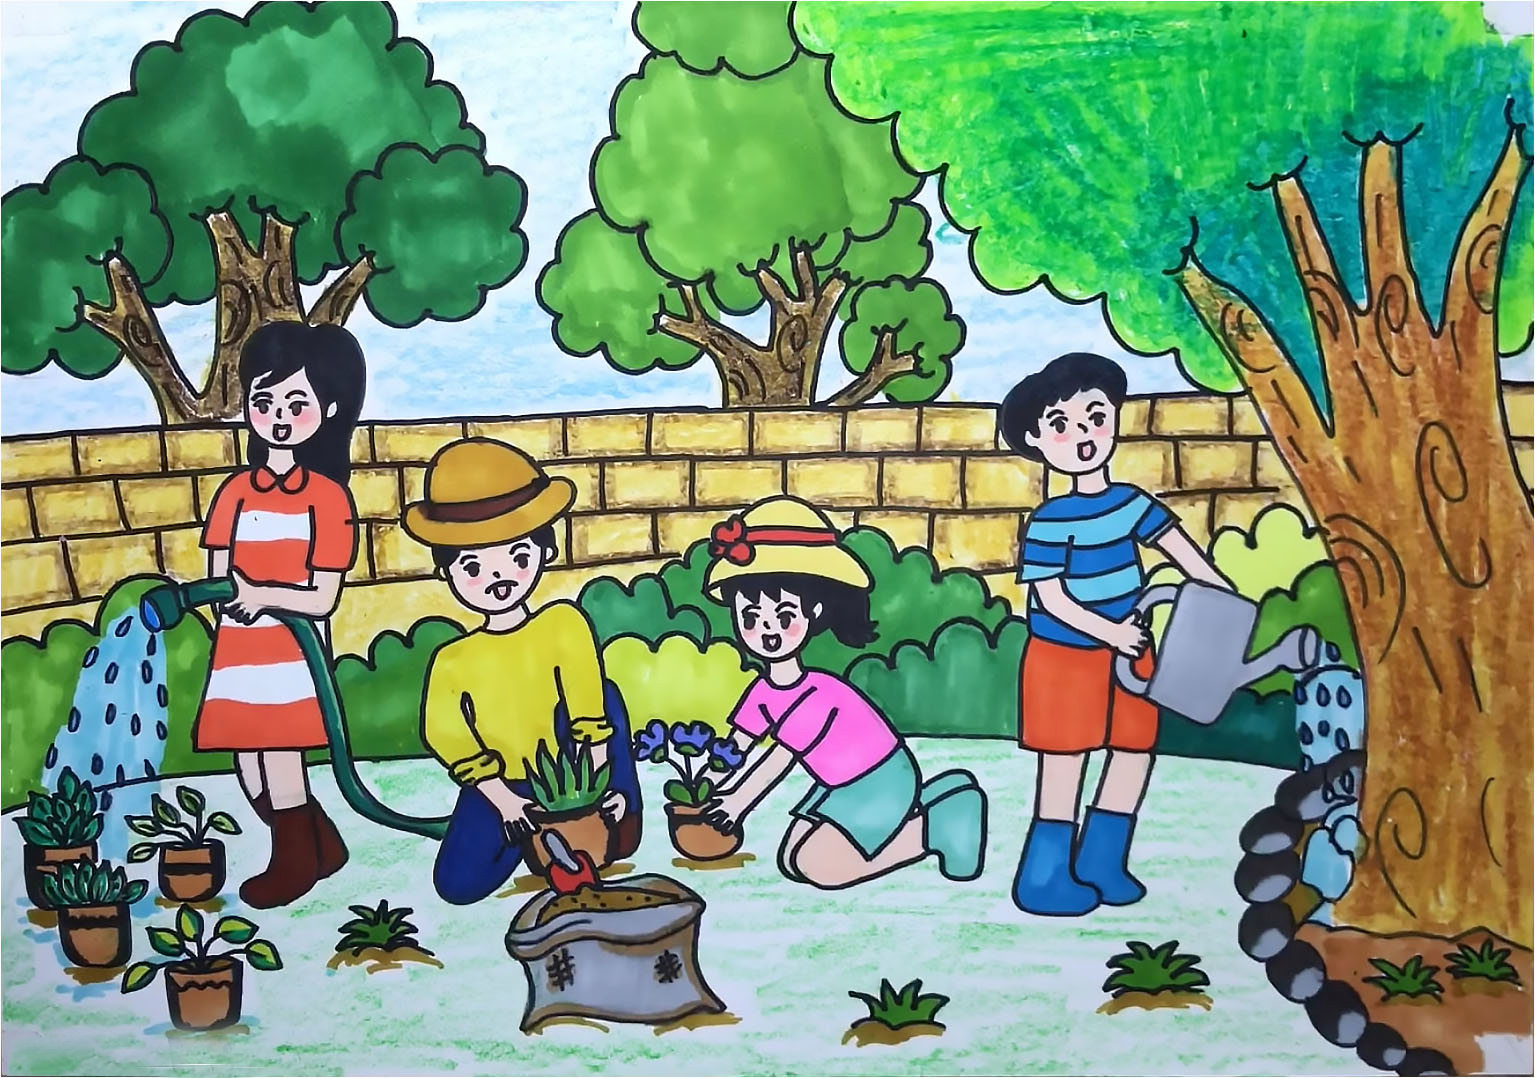 Cuộc thi vẽ tranh  Khu vui chơi mơ ước  Trường Tiểu Học THSP Ngụy Như  Kon Tum